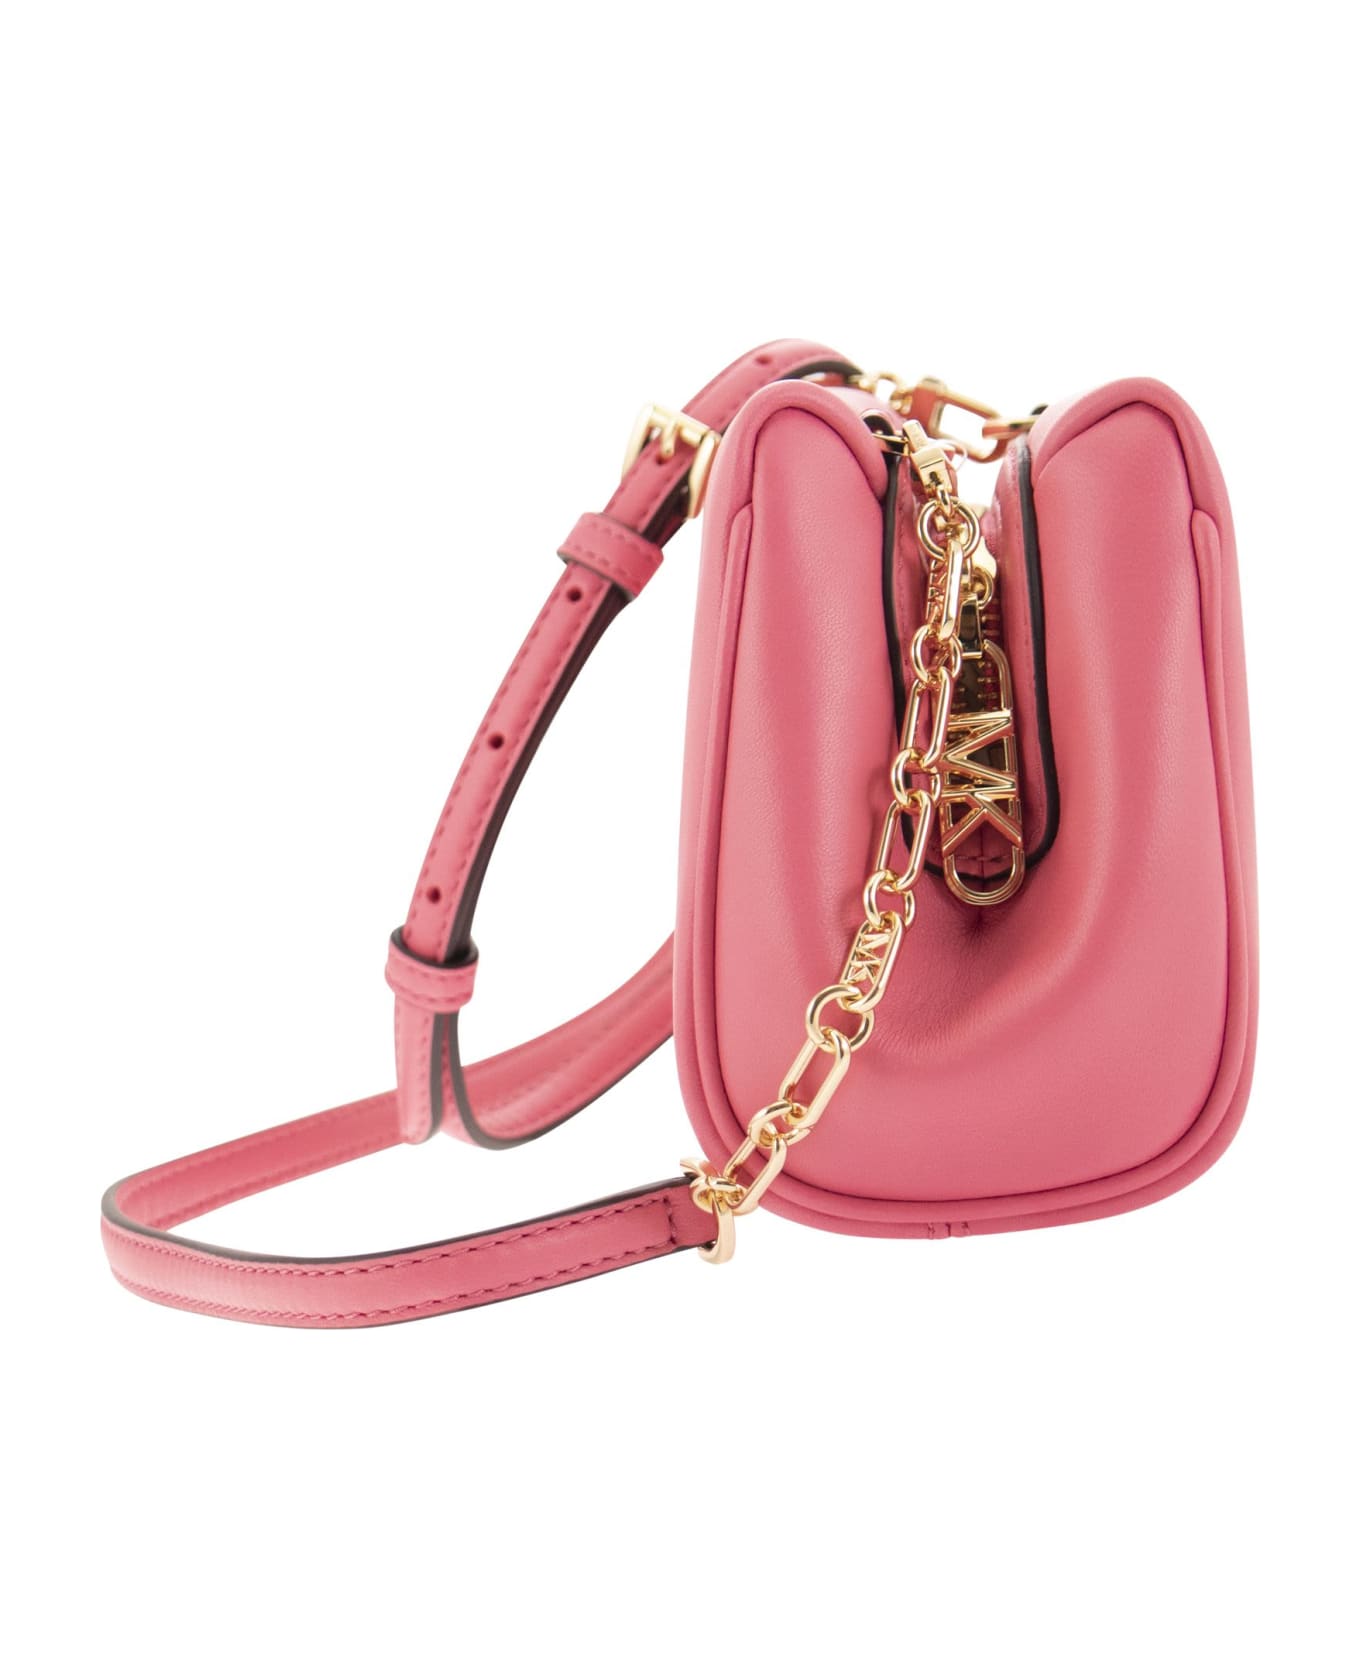 Michael Kors Belle Shoulder Bag - Pink